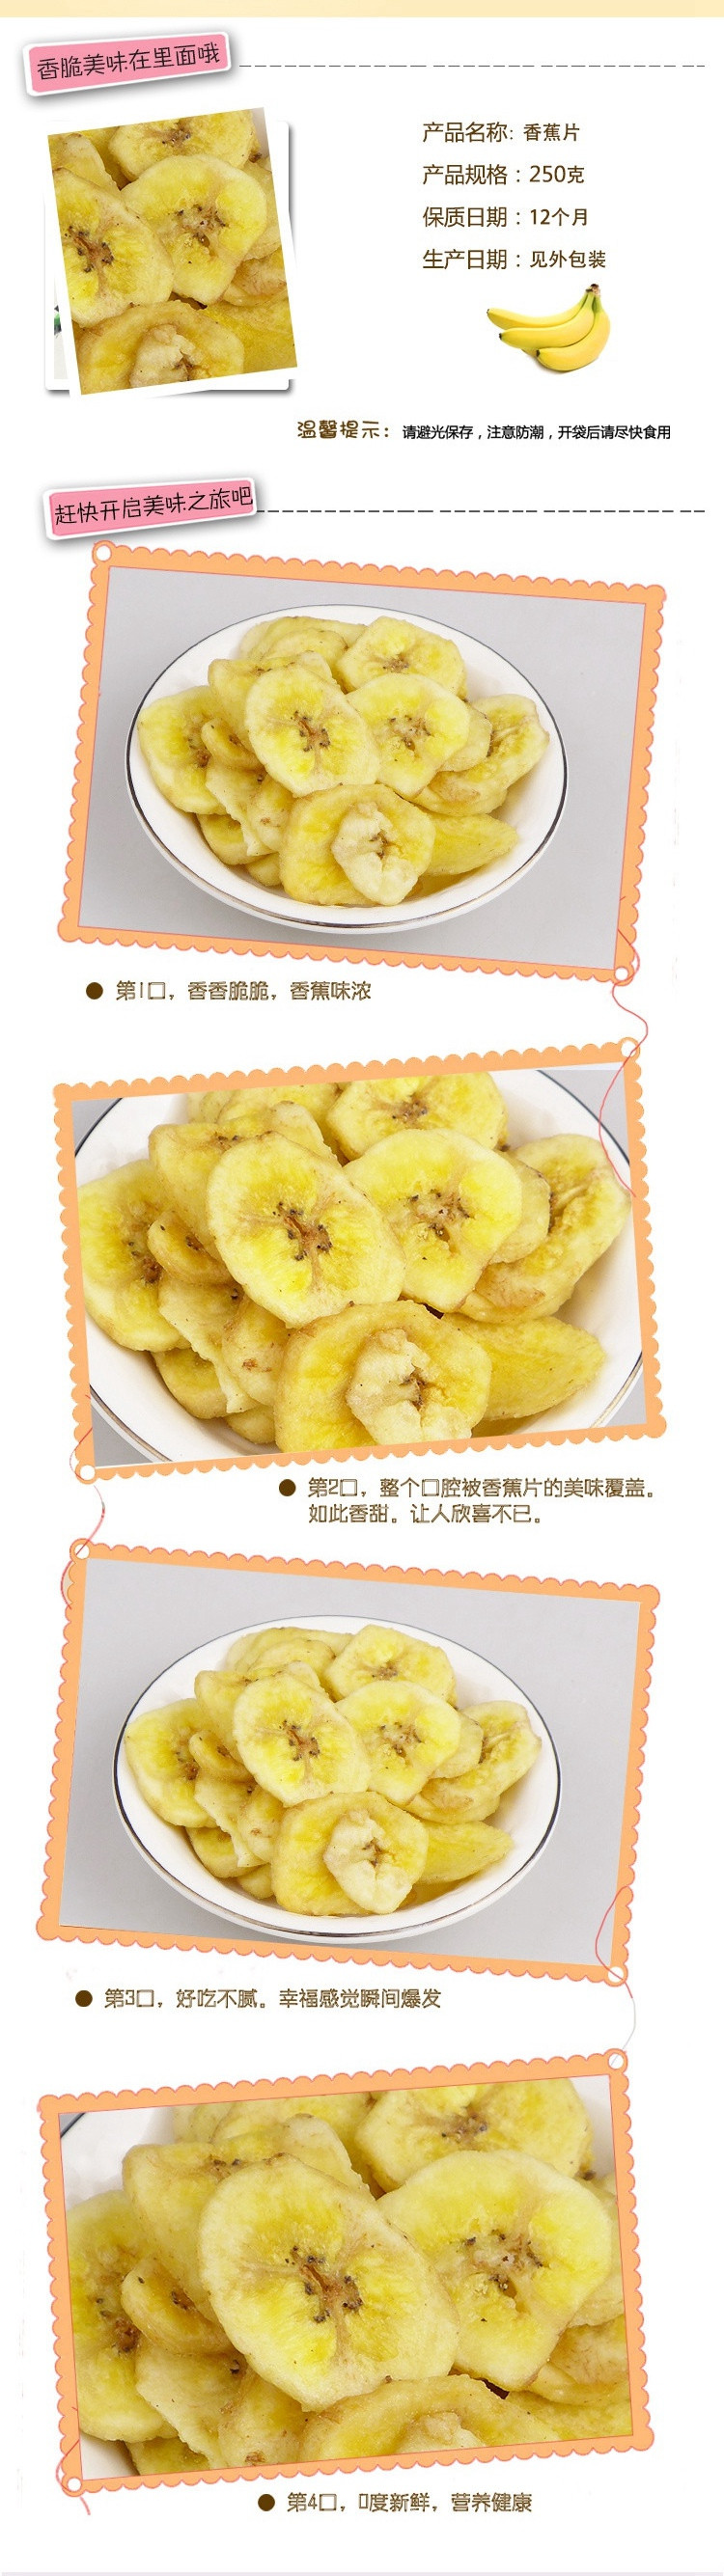 崔向阳 香蕉片250g*1袋